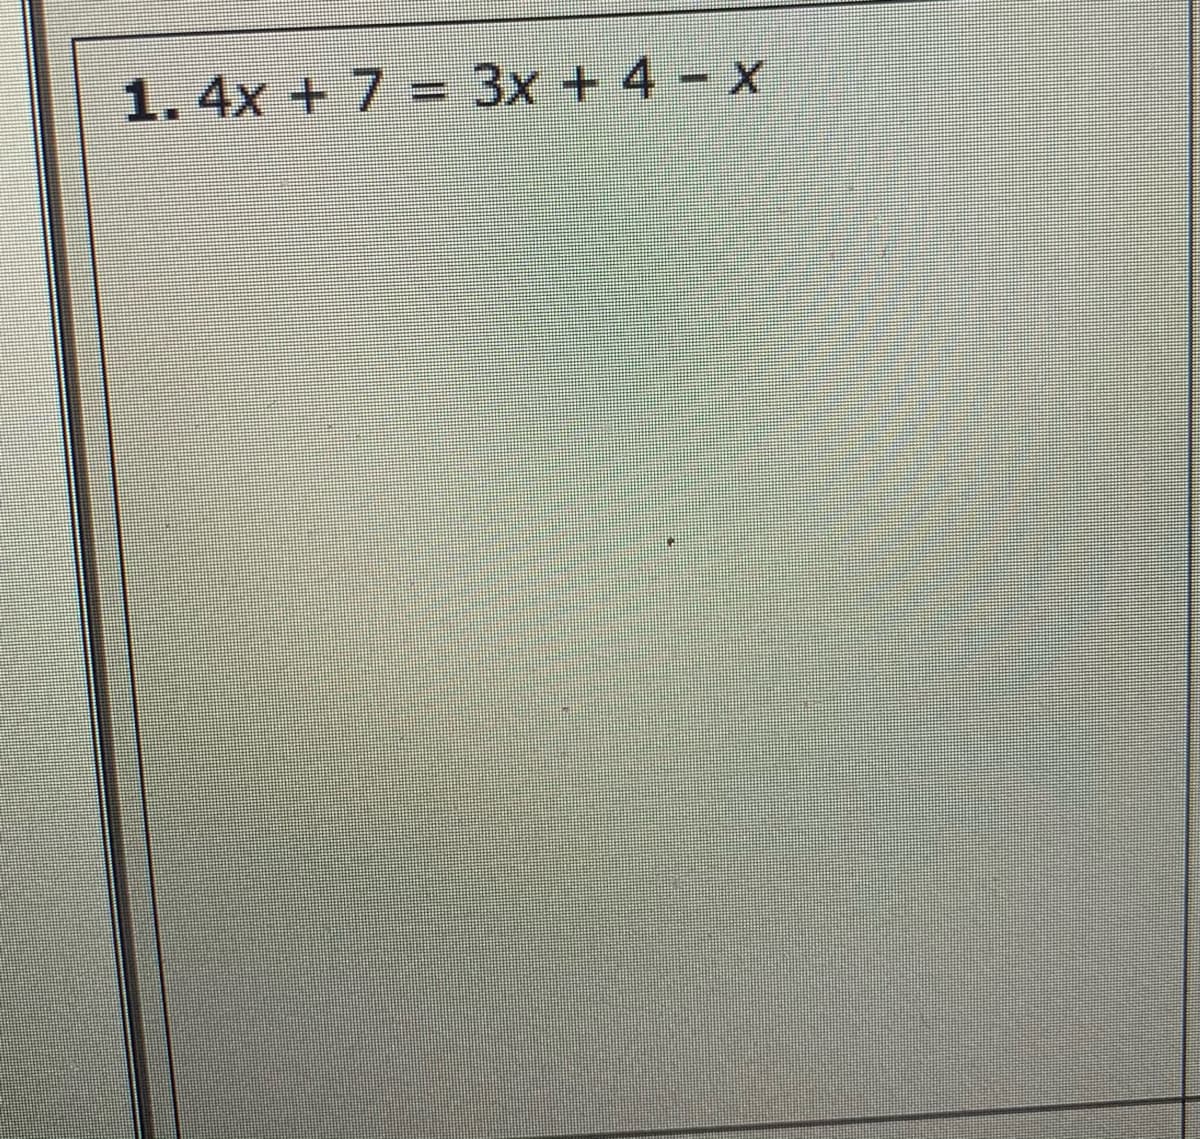 1.4x +7 = 3x + 4 - x
